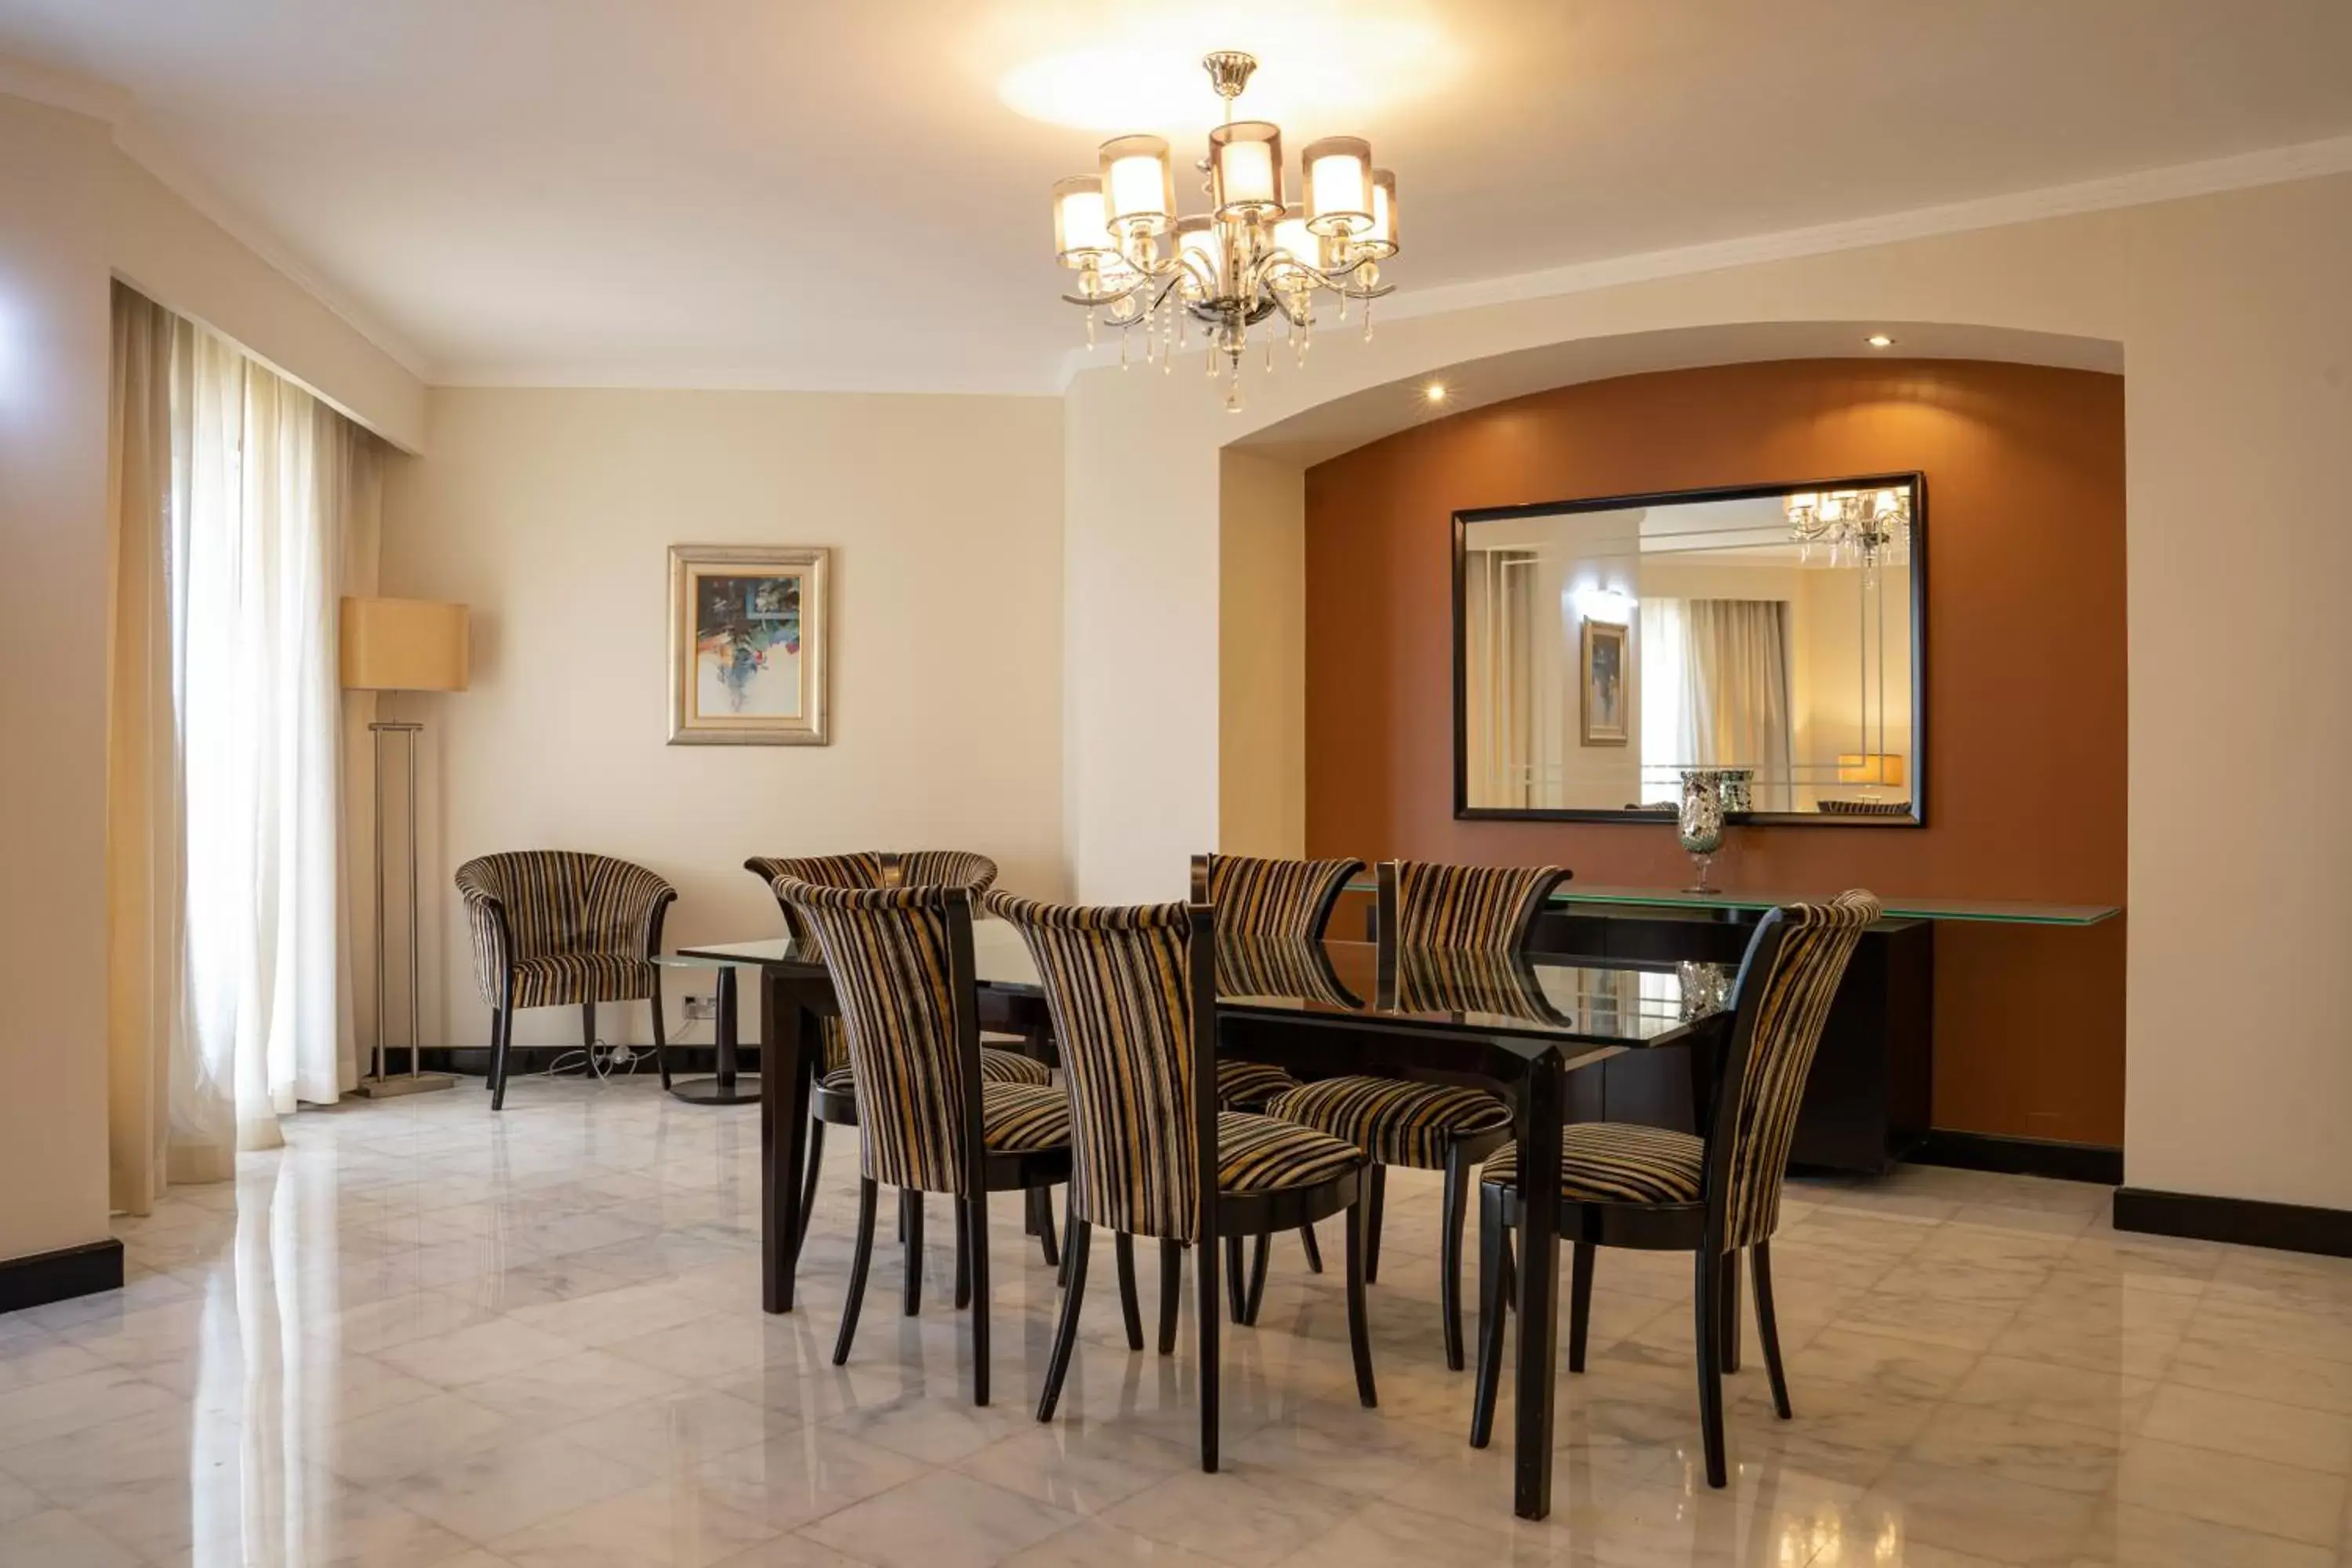 Living room, Dining Area in Danat Al Ain Resort